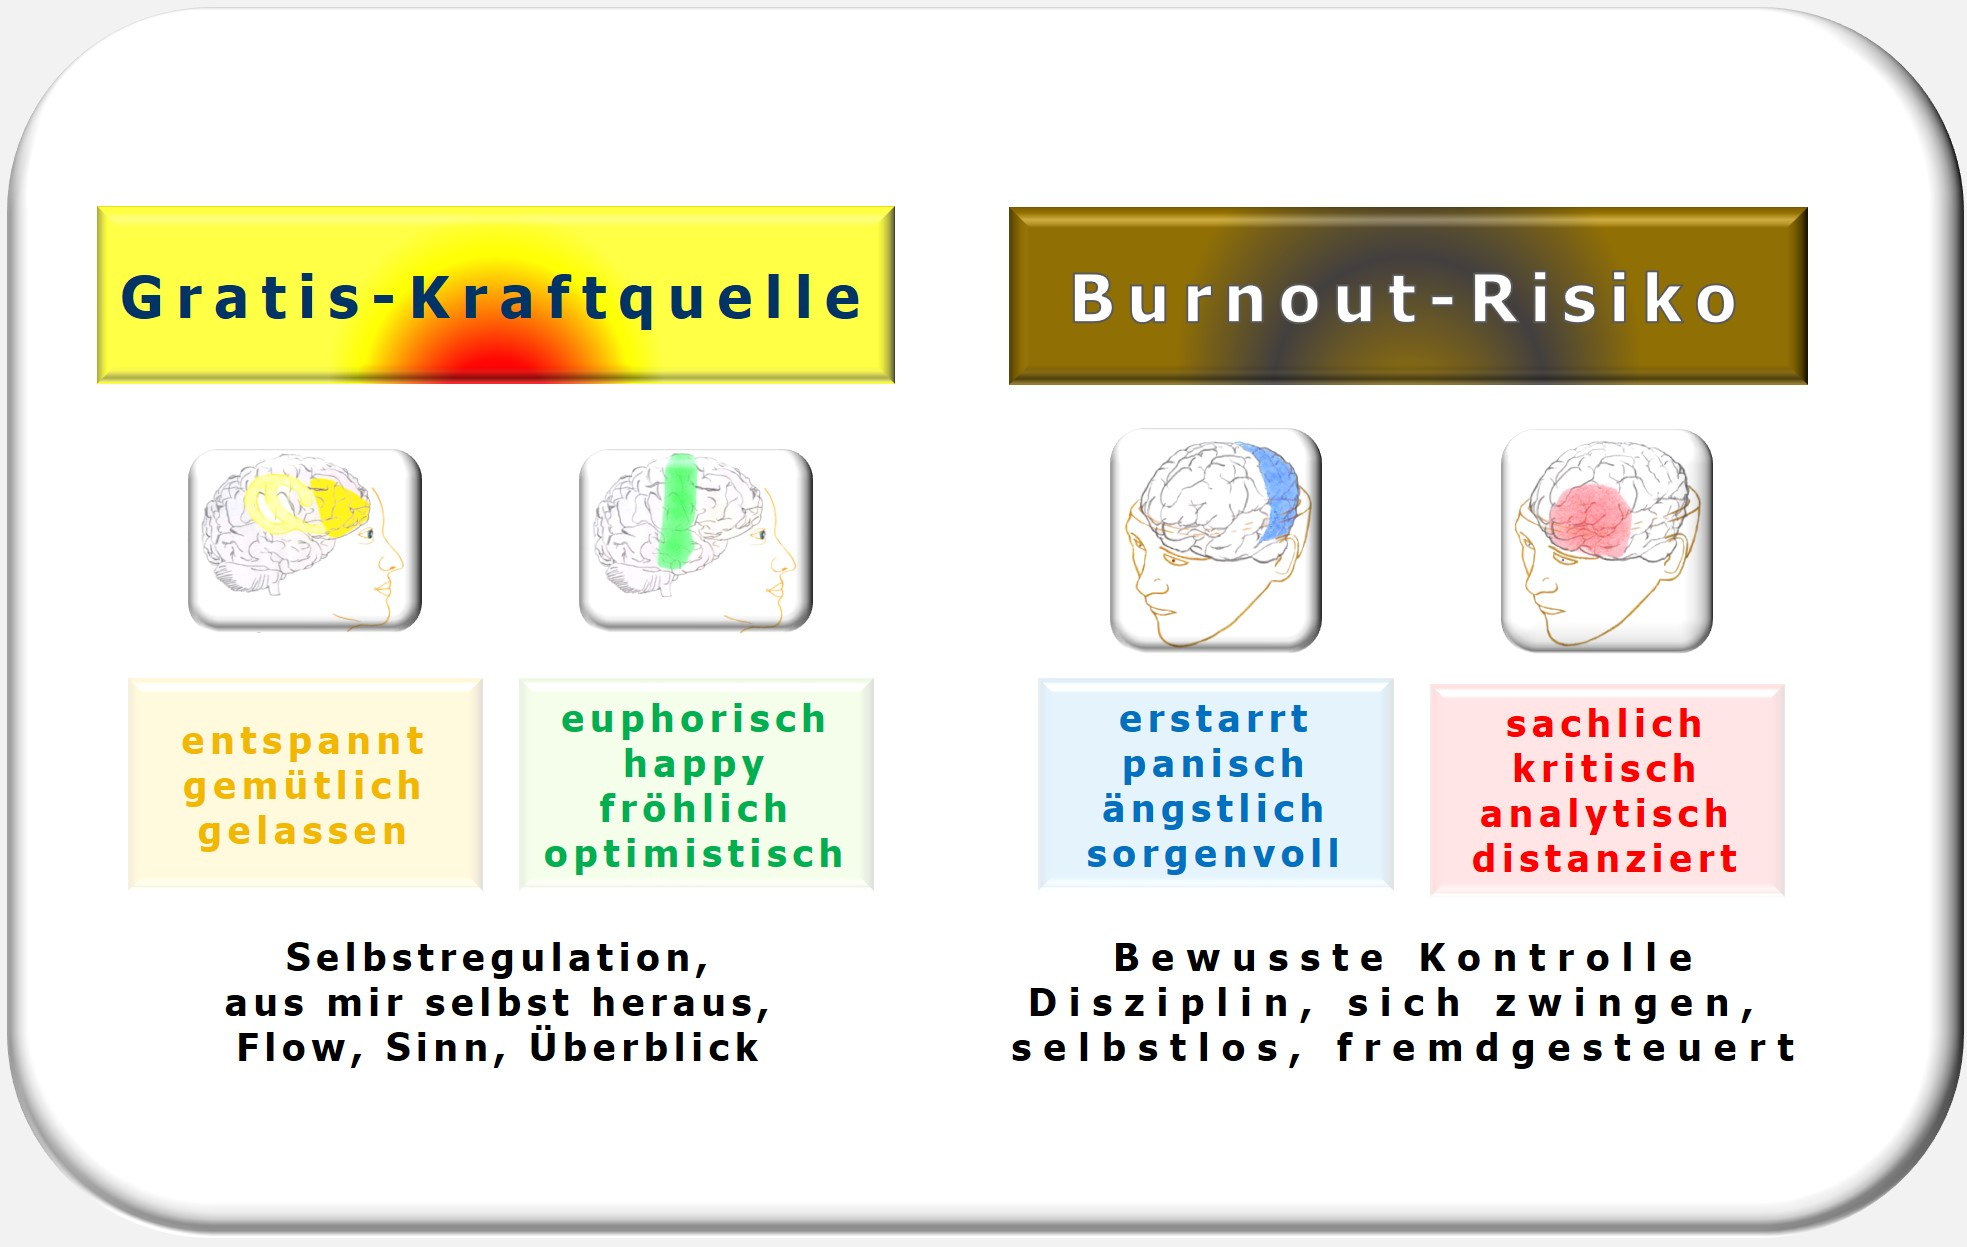 Burnout-Risiko, Burnout, Selbstmanagement, Disziplin, Selbstregulation, Zürcher Ressourcen Modell, Hartmut Neusitzer, ZRM